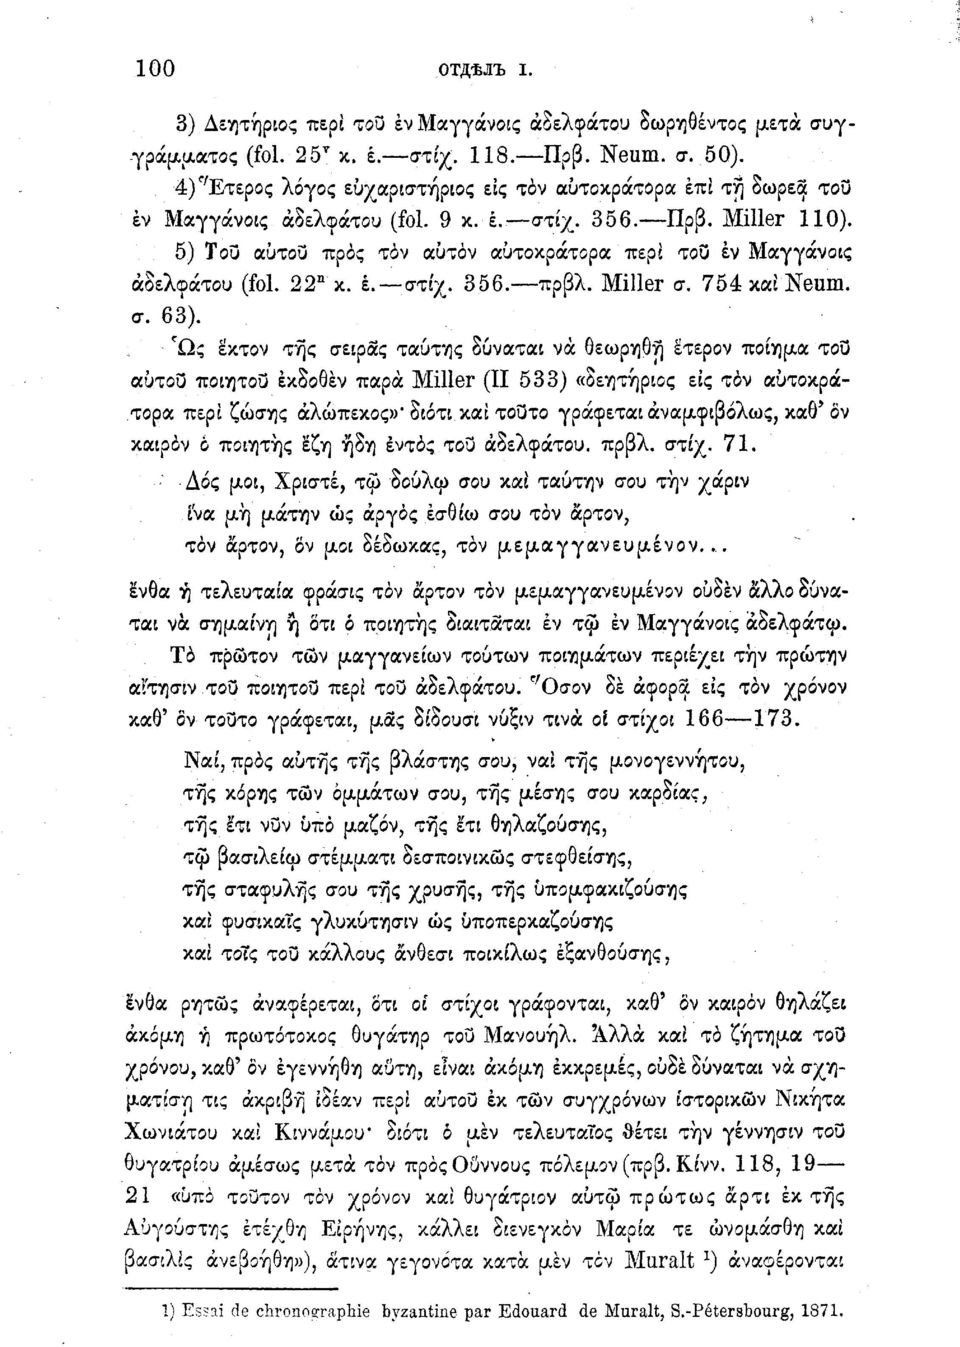 ) Του αύτου προς τον αυτόν αυτοκράτορα περί του έν Μαγγάνοις αδελφάτου (fol. 22 n κ. έ. στίχ. 356. πρβλ. Miller σ. 754 και Neum. σ. 63).